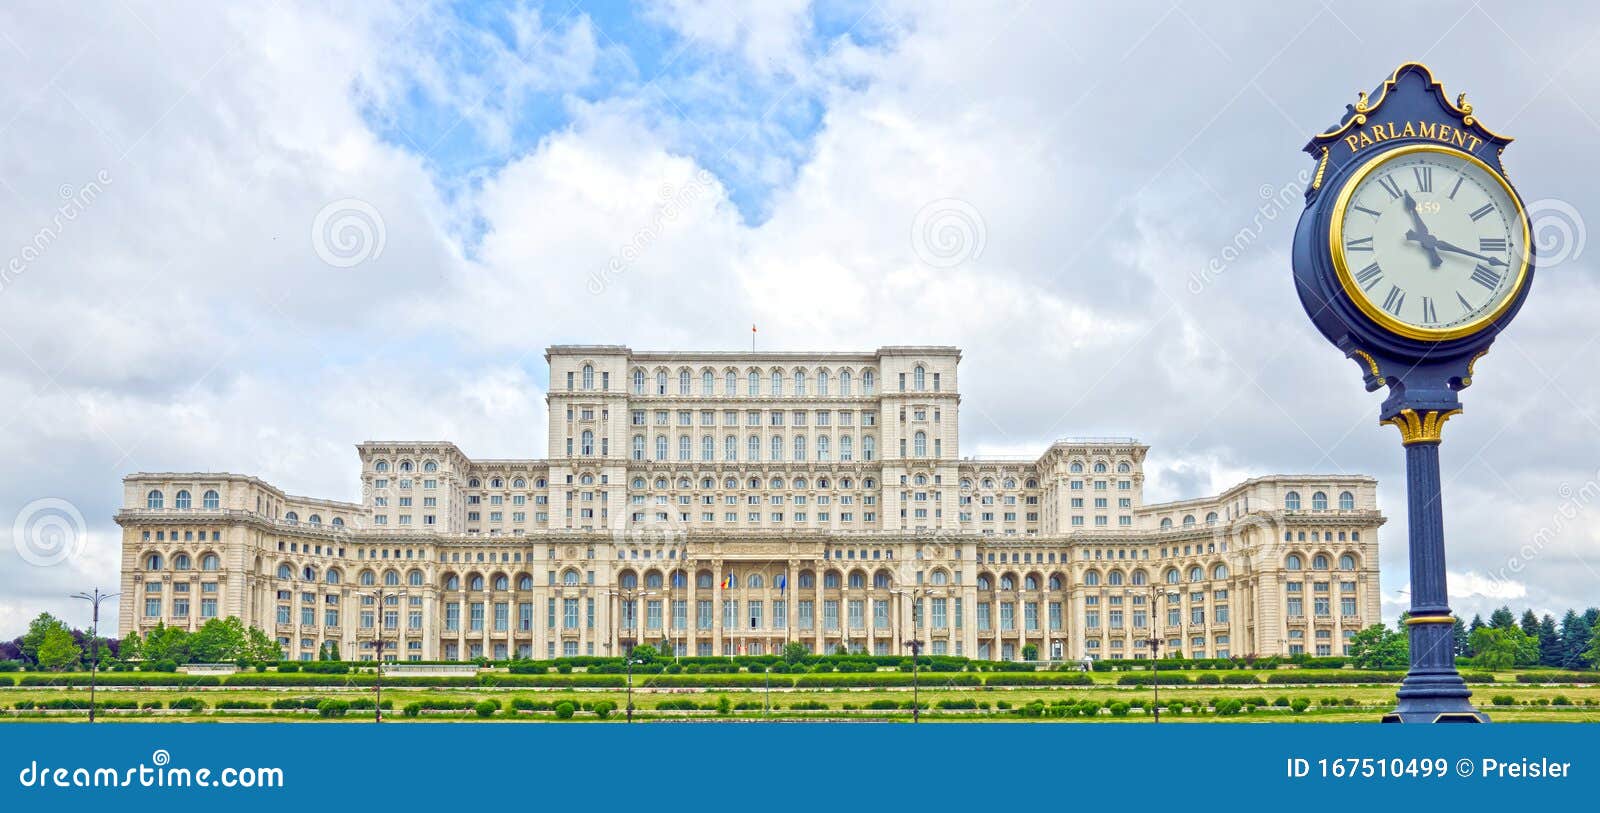 Weekino Palacio del Parlamento Bucarest Rumania Imán de Nevera 3D de Cristal de Turismo de la Ciudad de Viaje Recuerdo de la Colección de Regalo Fuerte Etiqueta Engomada del refrigerador